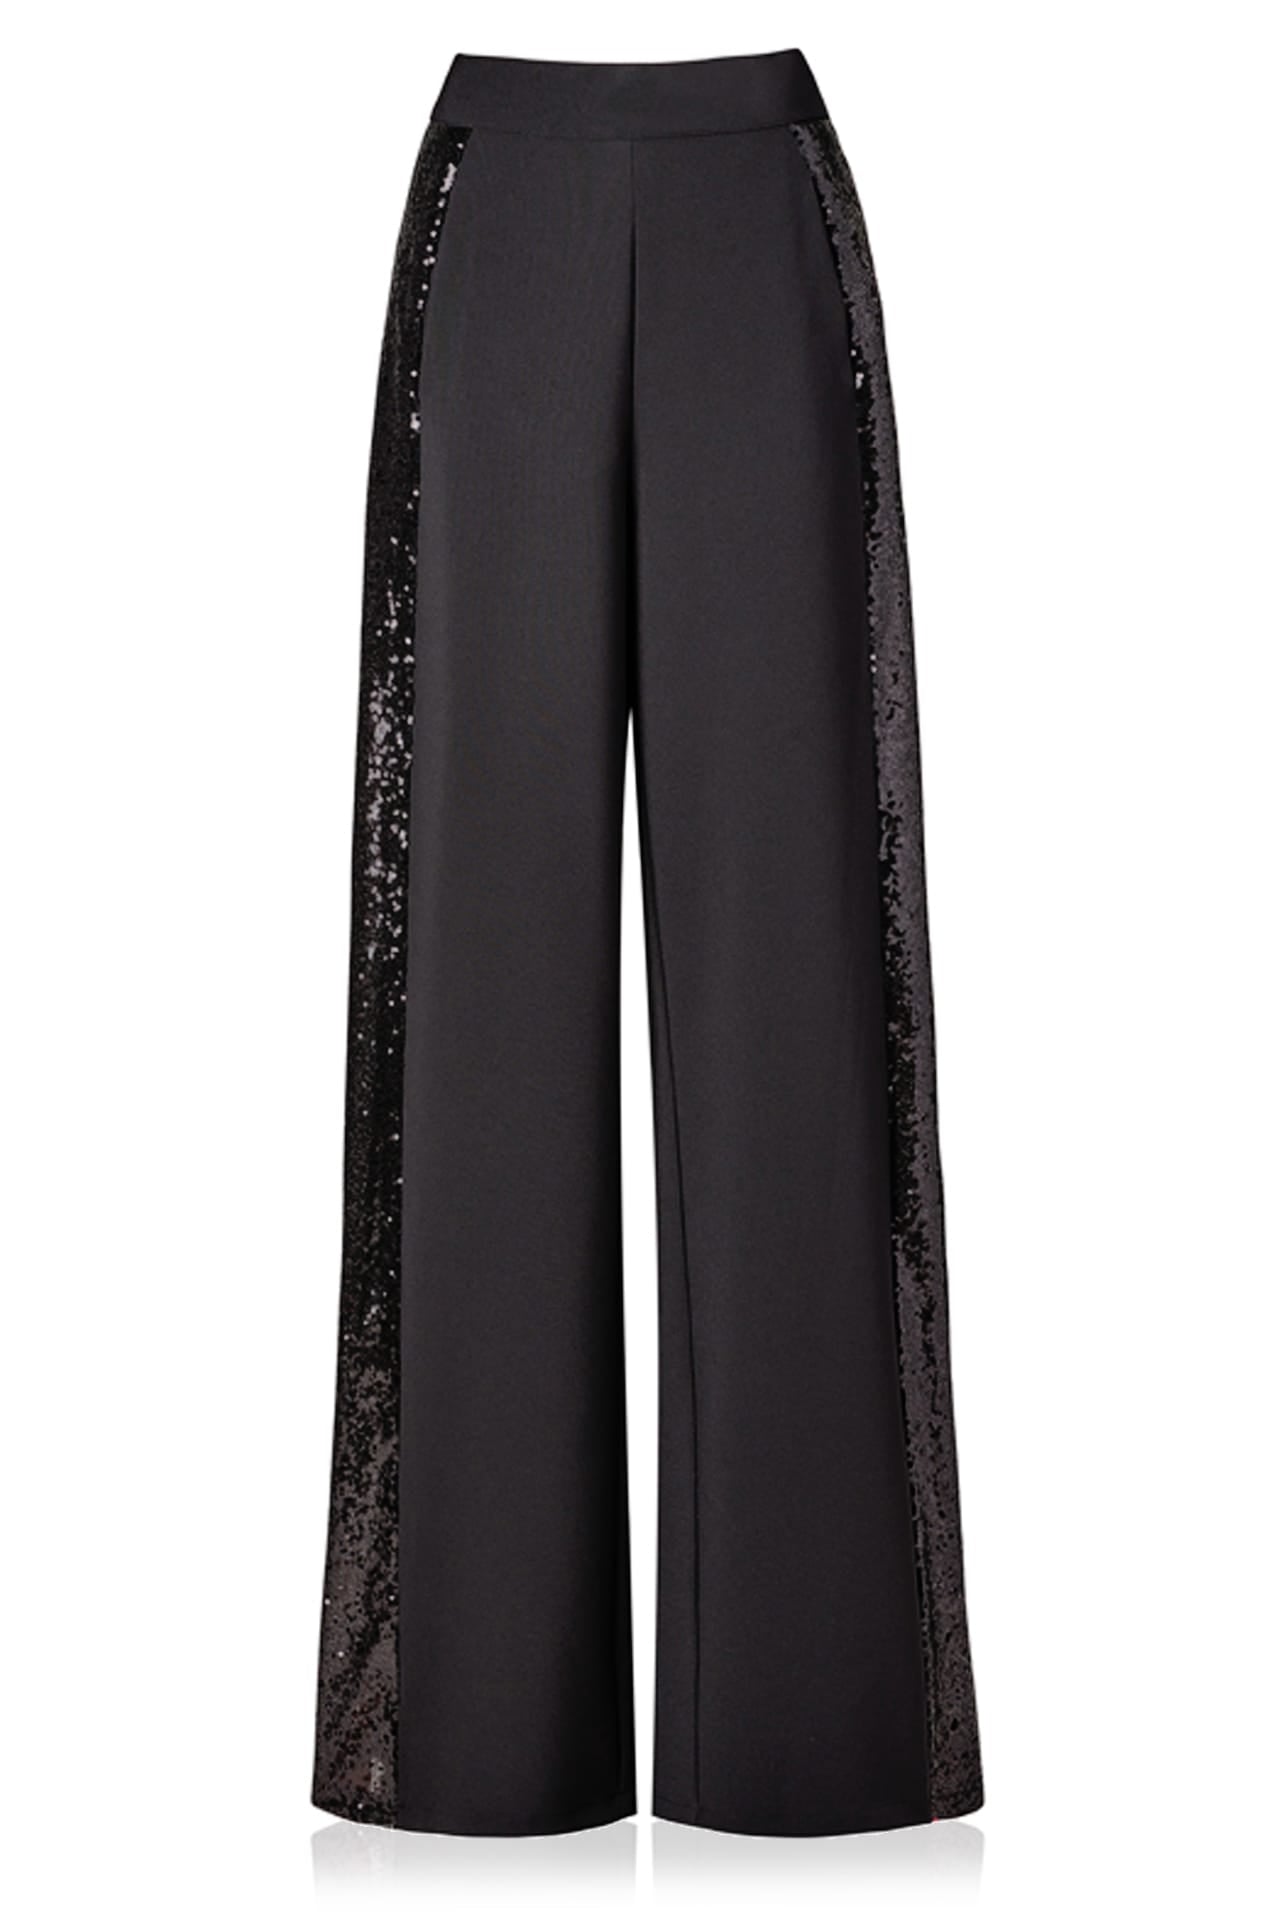 black-sequin-trouser-suit-Kyle-X-Shahida-sequin-long-sleeve-body-suit-sequence-suit-for-women-sequin-black-suit